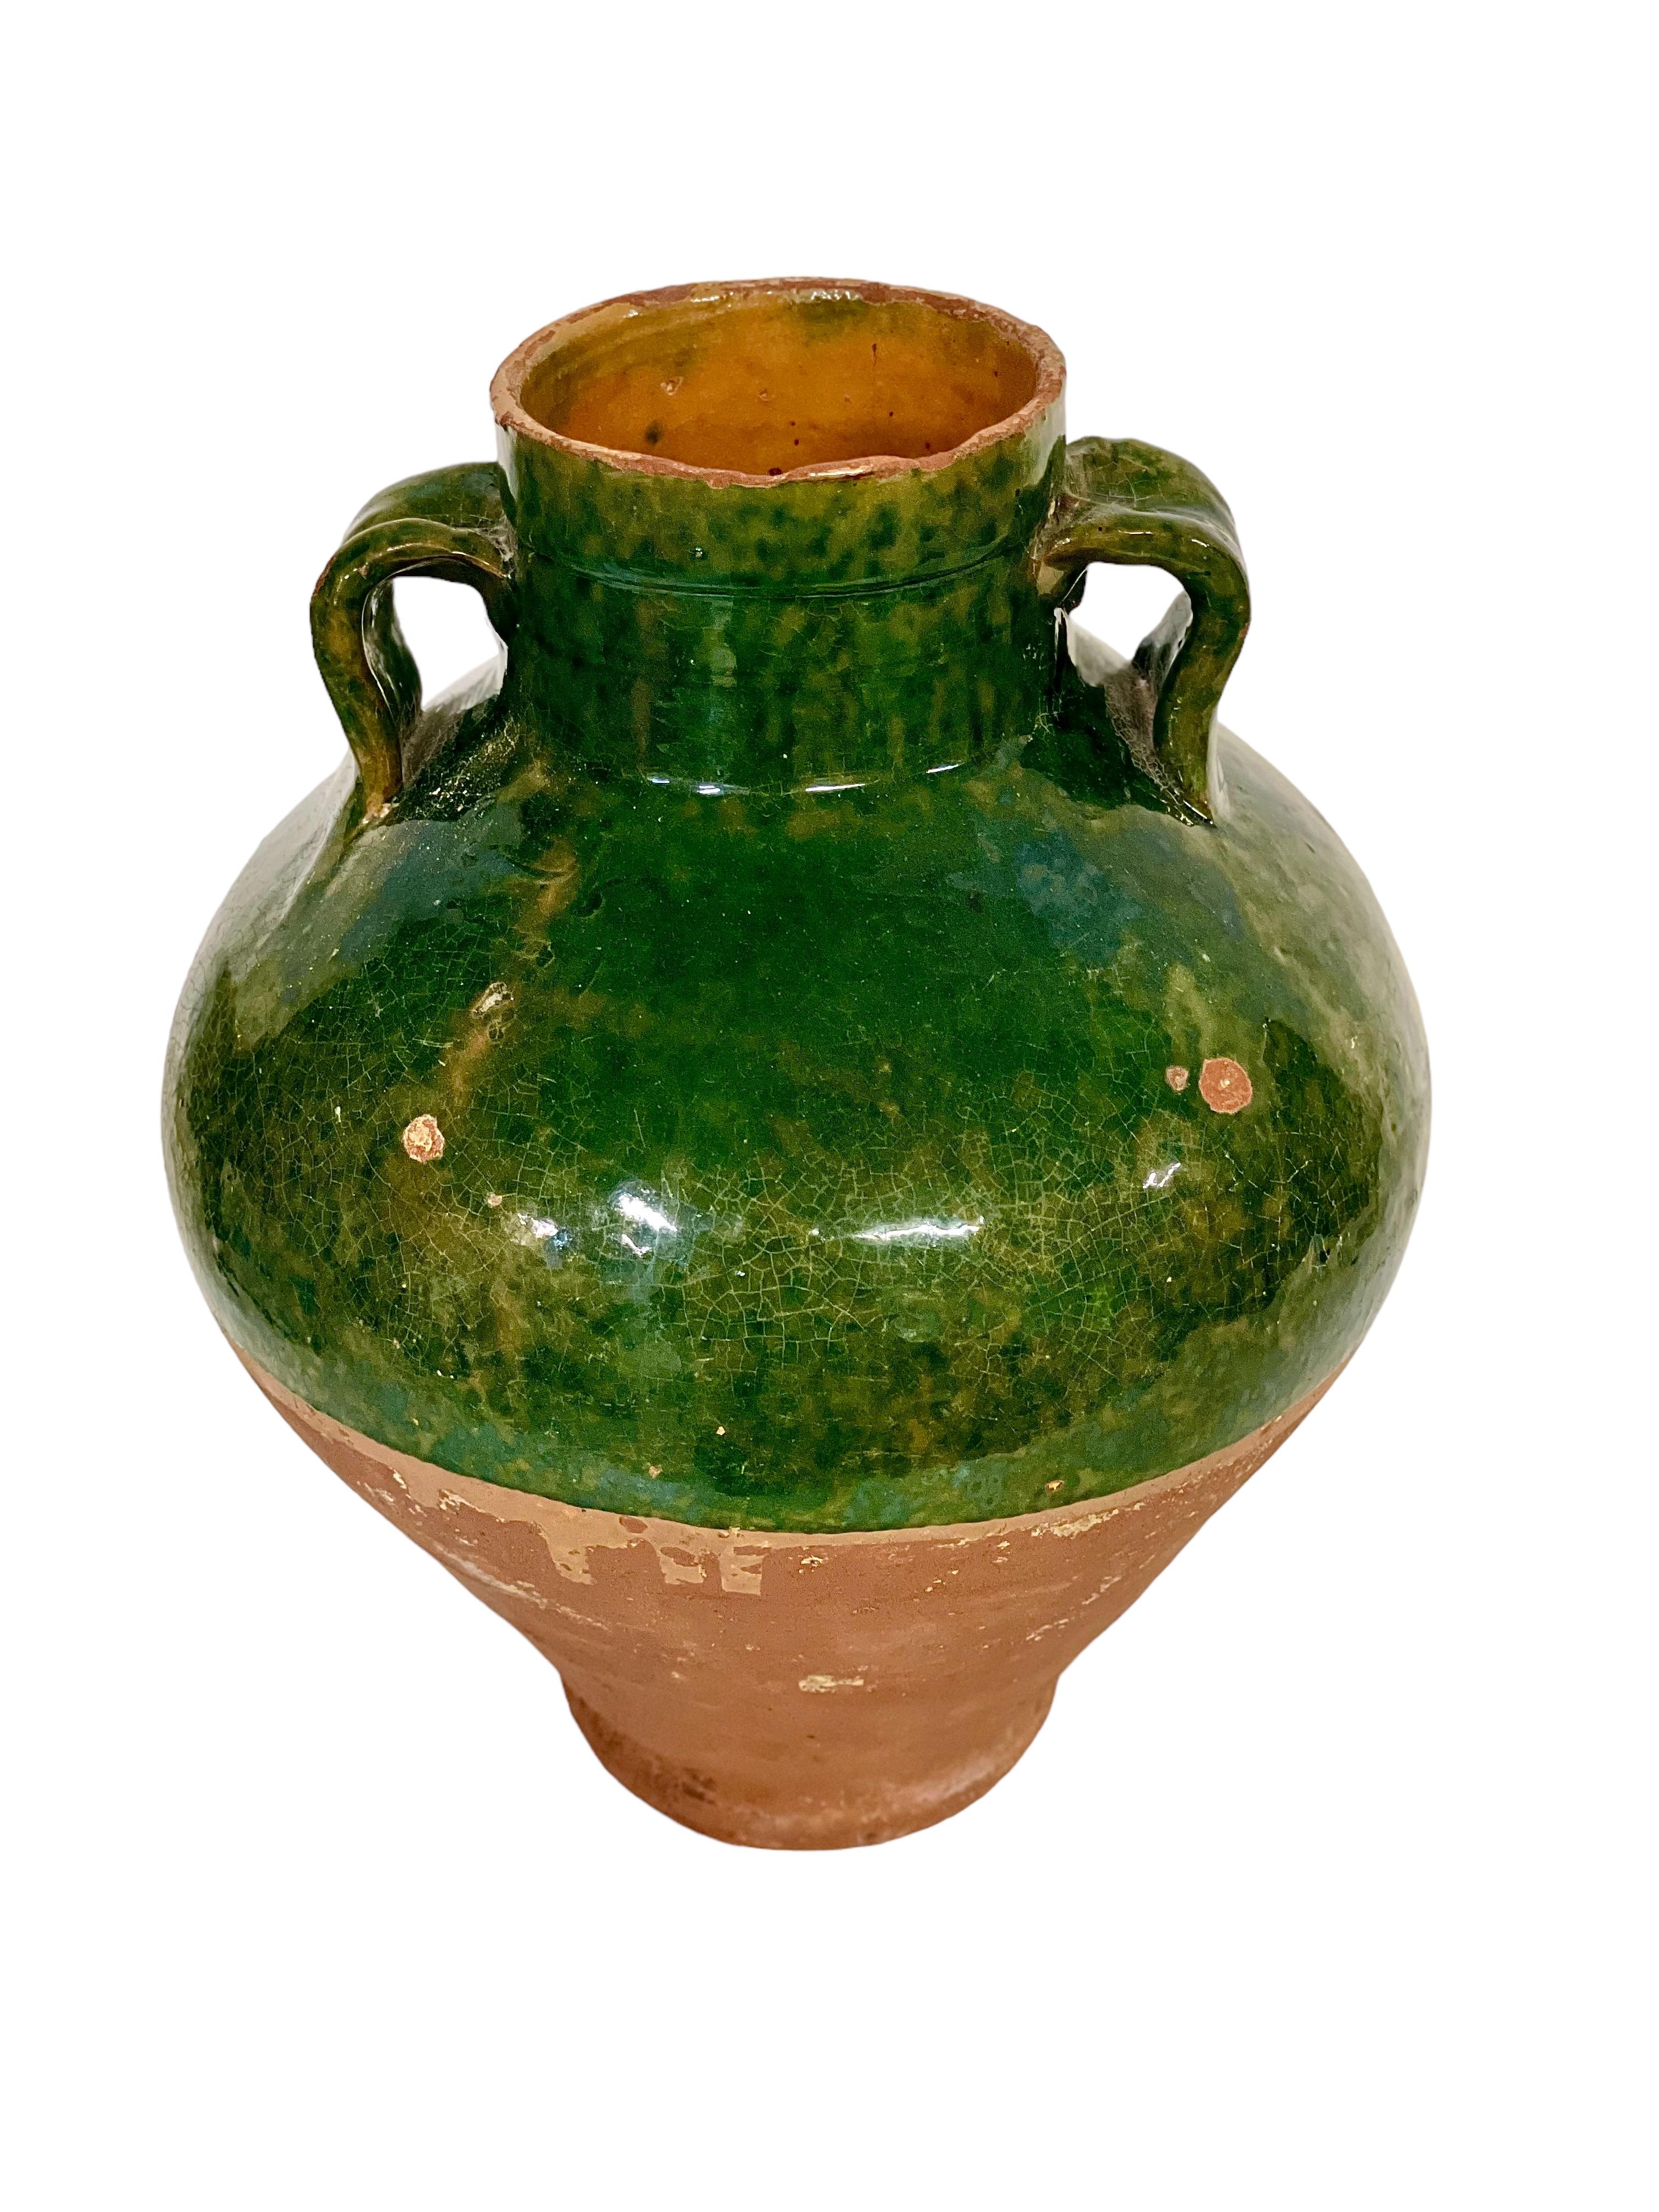 Ce superbe pot en terre cuite français du XIXe siècle, à moitié émaillé d'un vert émeraude vibrant, a commencé sa vie comme récipient ménager utilitaire pour la conservation et le stockage de l'huile d'olive. Entièrement vitrée à l'intérieur, seule